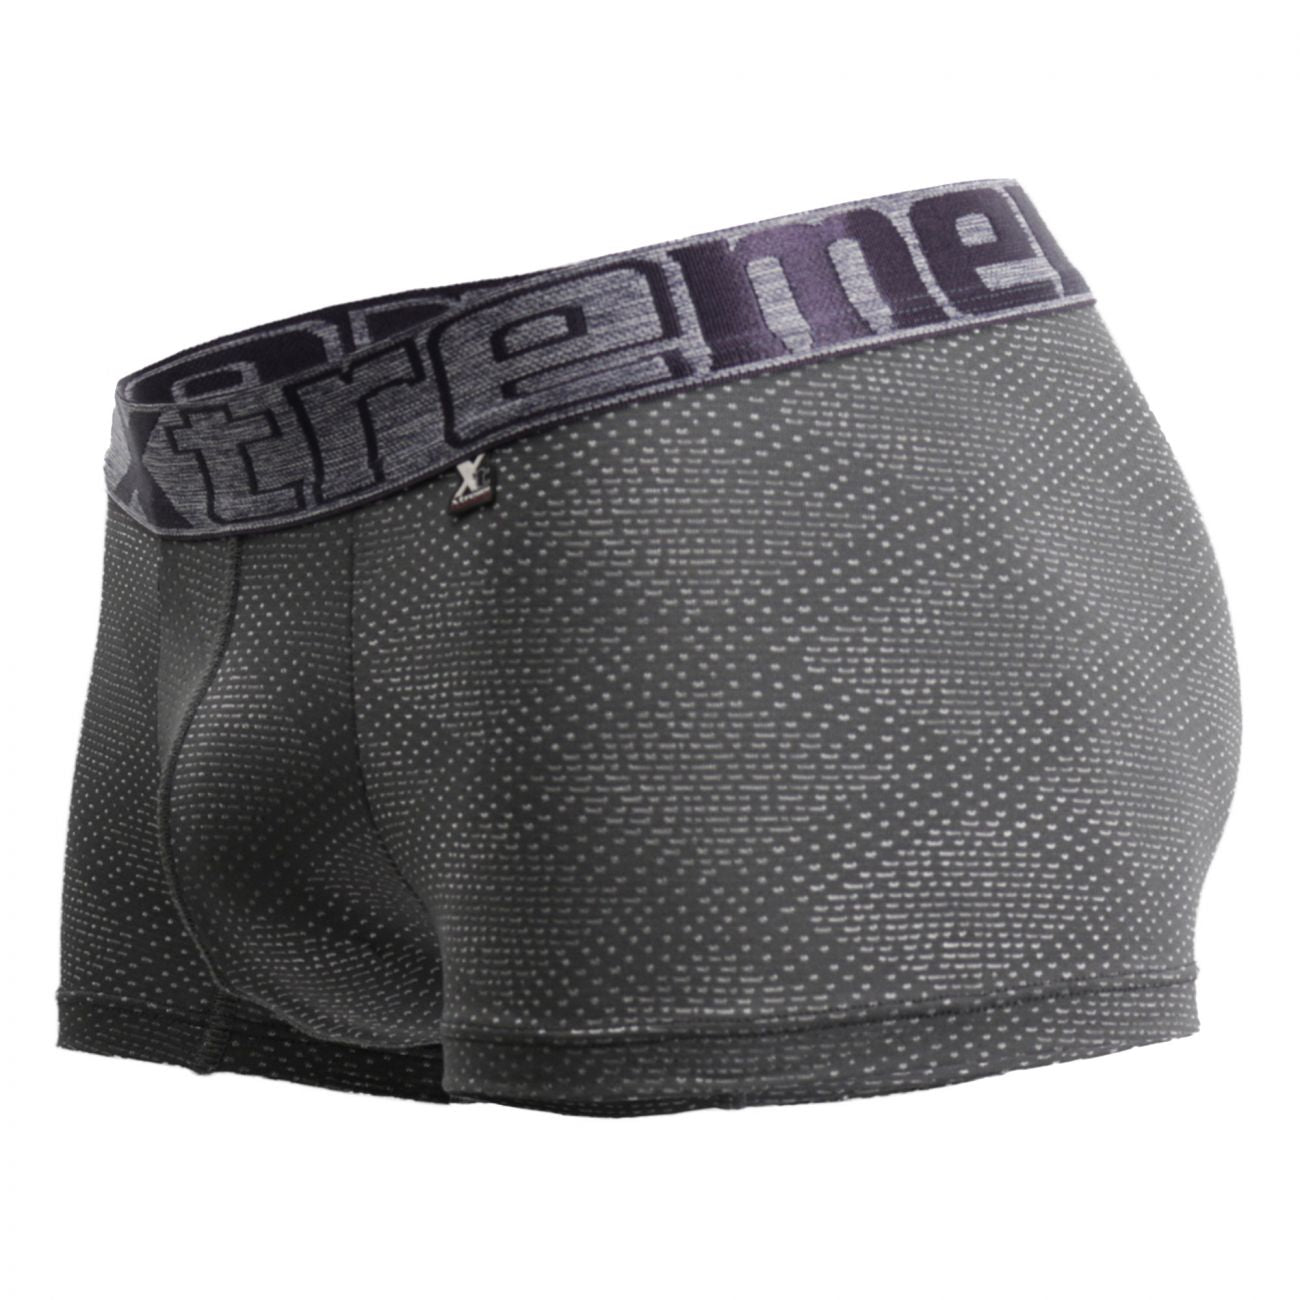 under-yours - Jacquard Stripes Boxer Briefs - Xtremen - Mens Underwear